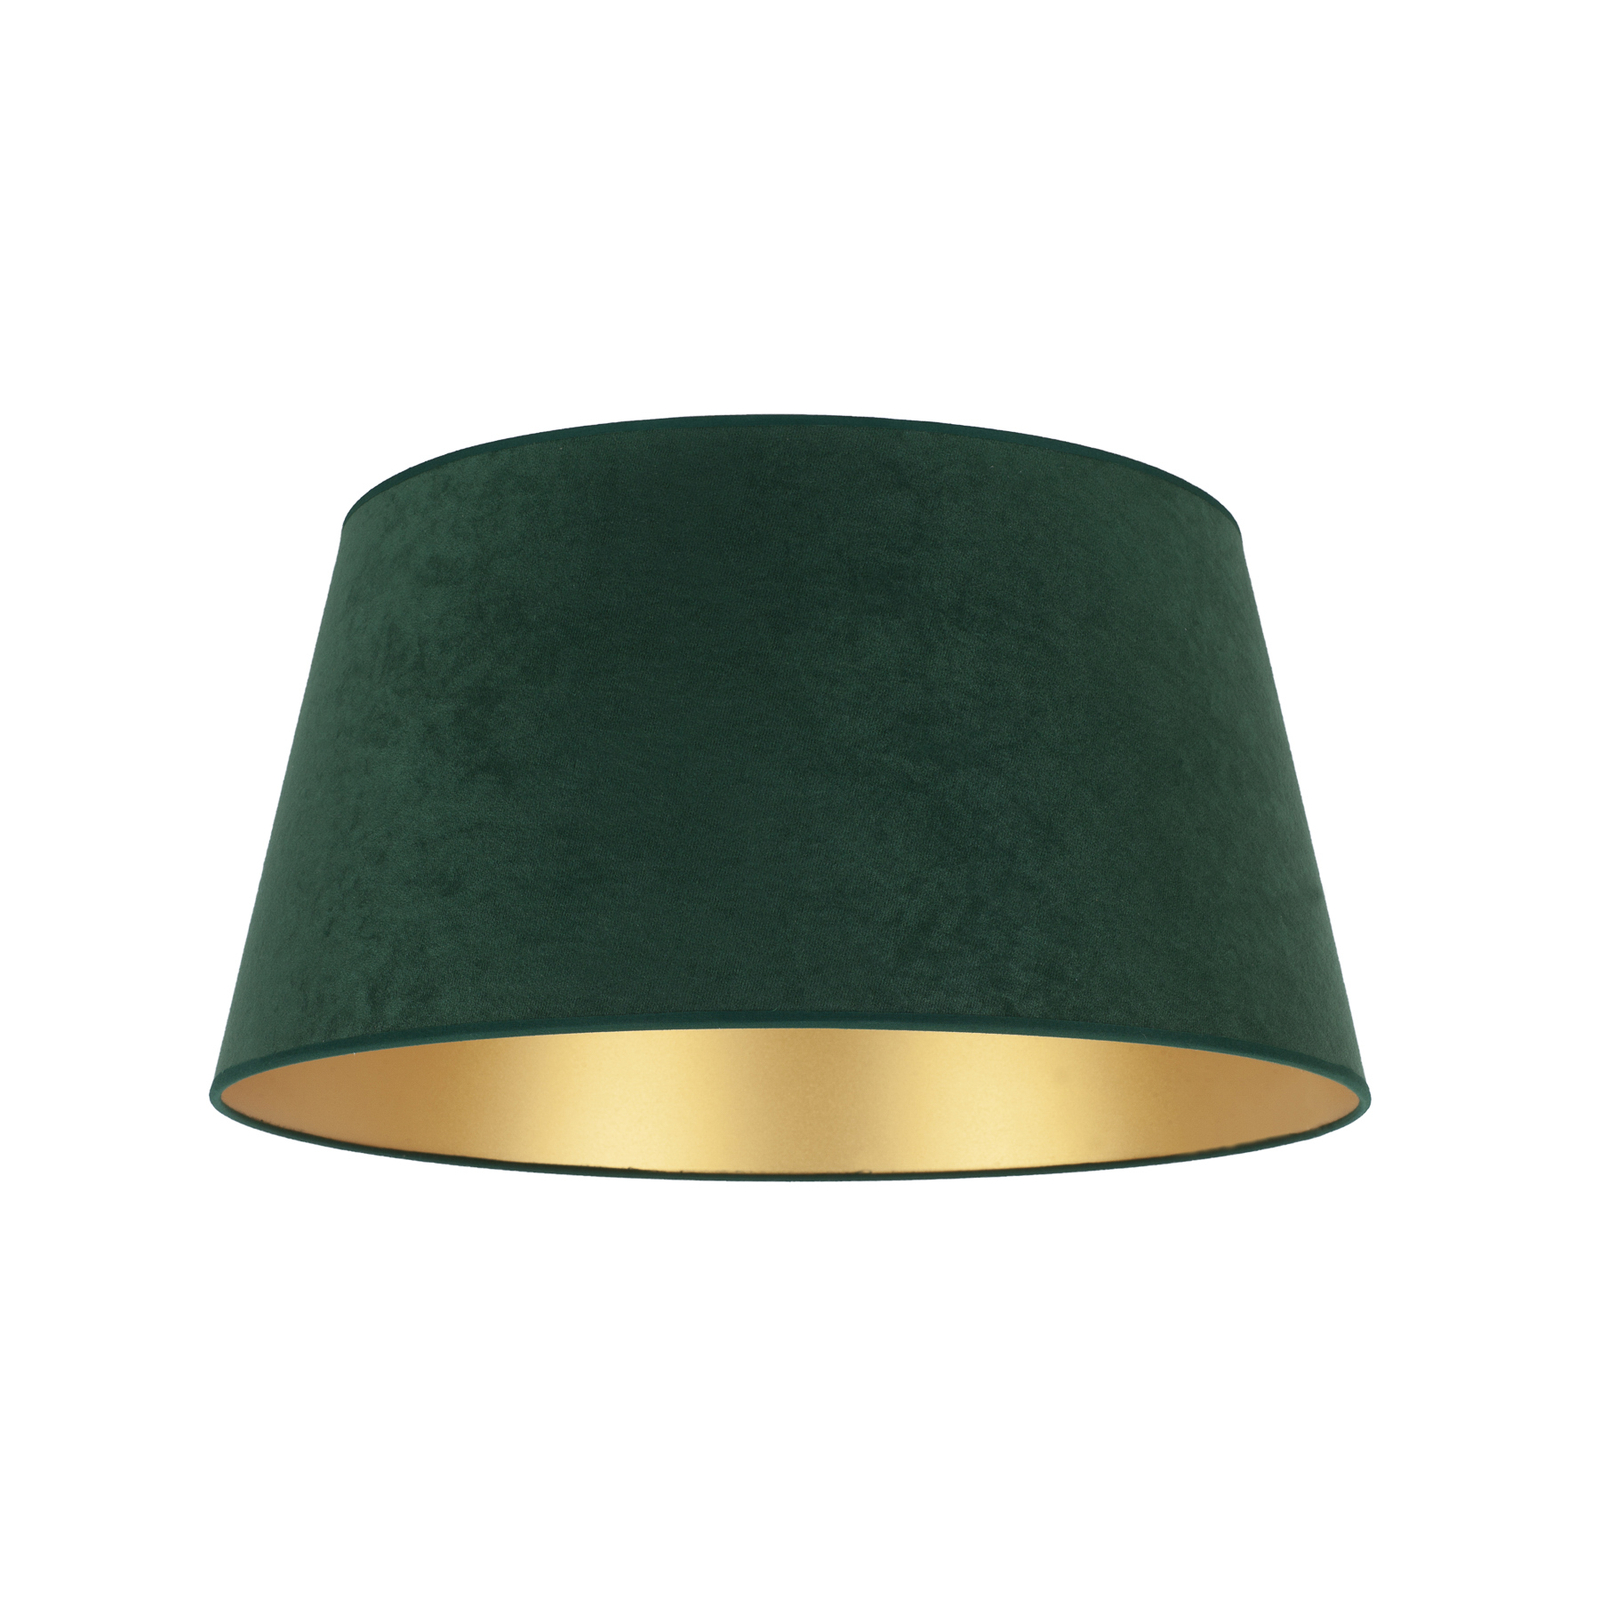 Cone lámpaernyő 22,5 cm magas, sötétzöld/arany